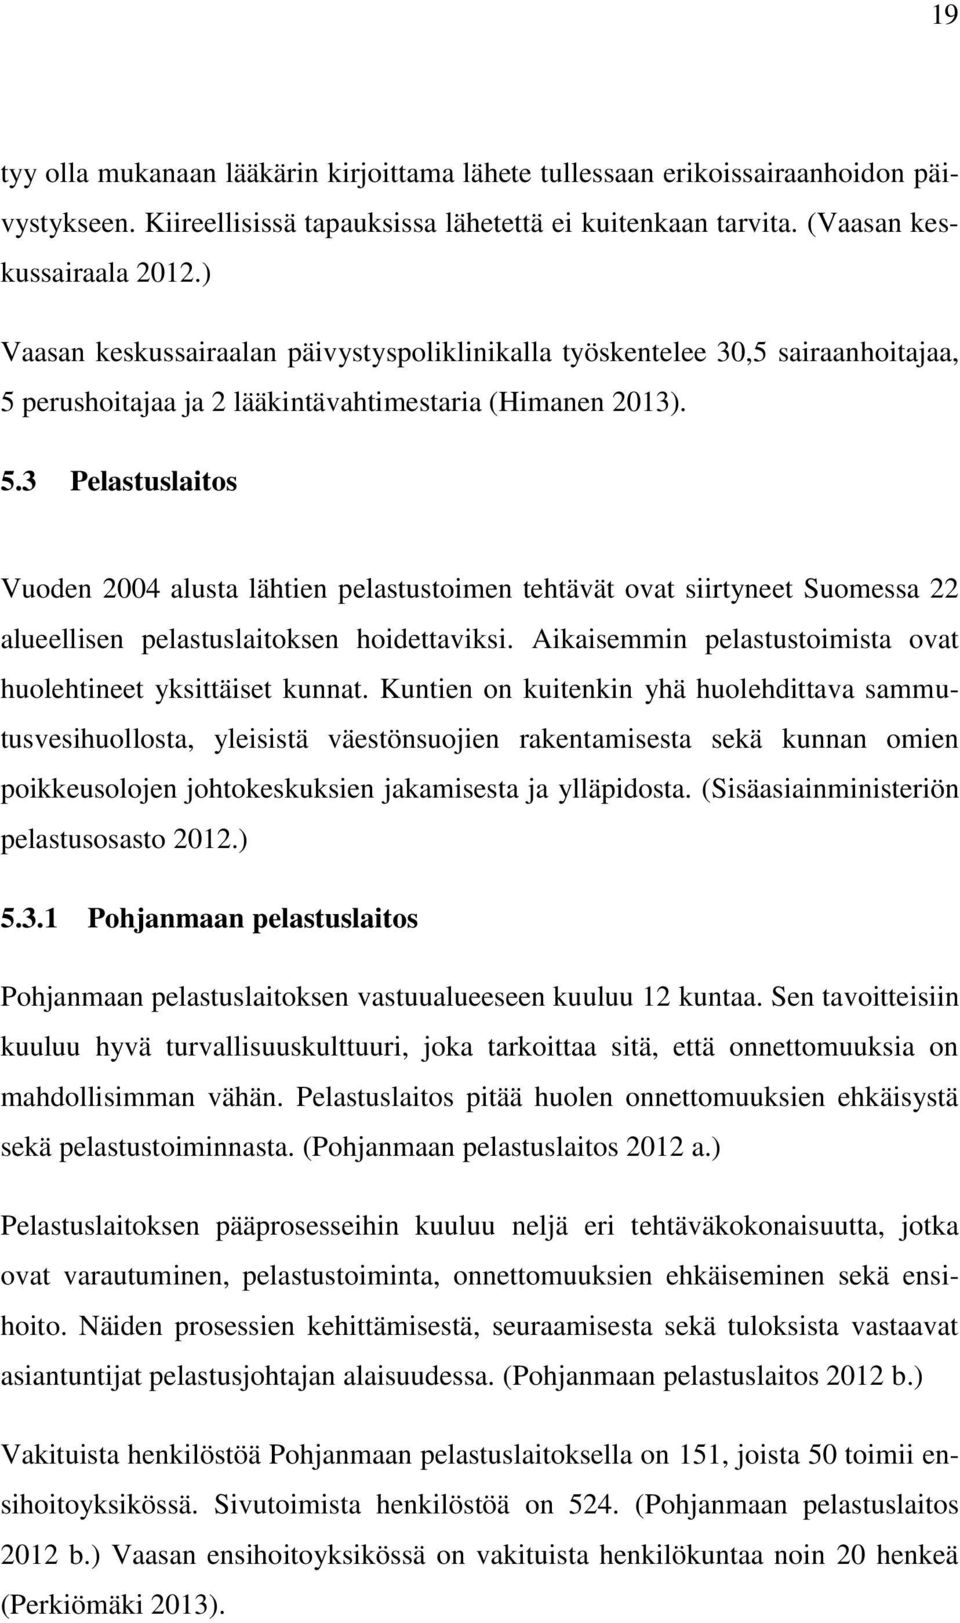 perushoitajaa ja 2 lääkintävahtimestaria (Himanen 2013). 5.3 Pelastuslaitos Vuoden 2004 alusta lähtien pelastustoimen tehtävät ovat siirtyneet Suomessa 22 alueellisen pelastuslaitoksen hoidettaviksi.